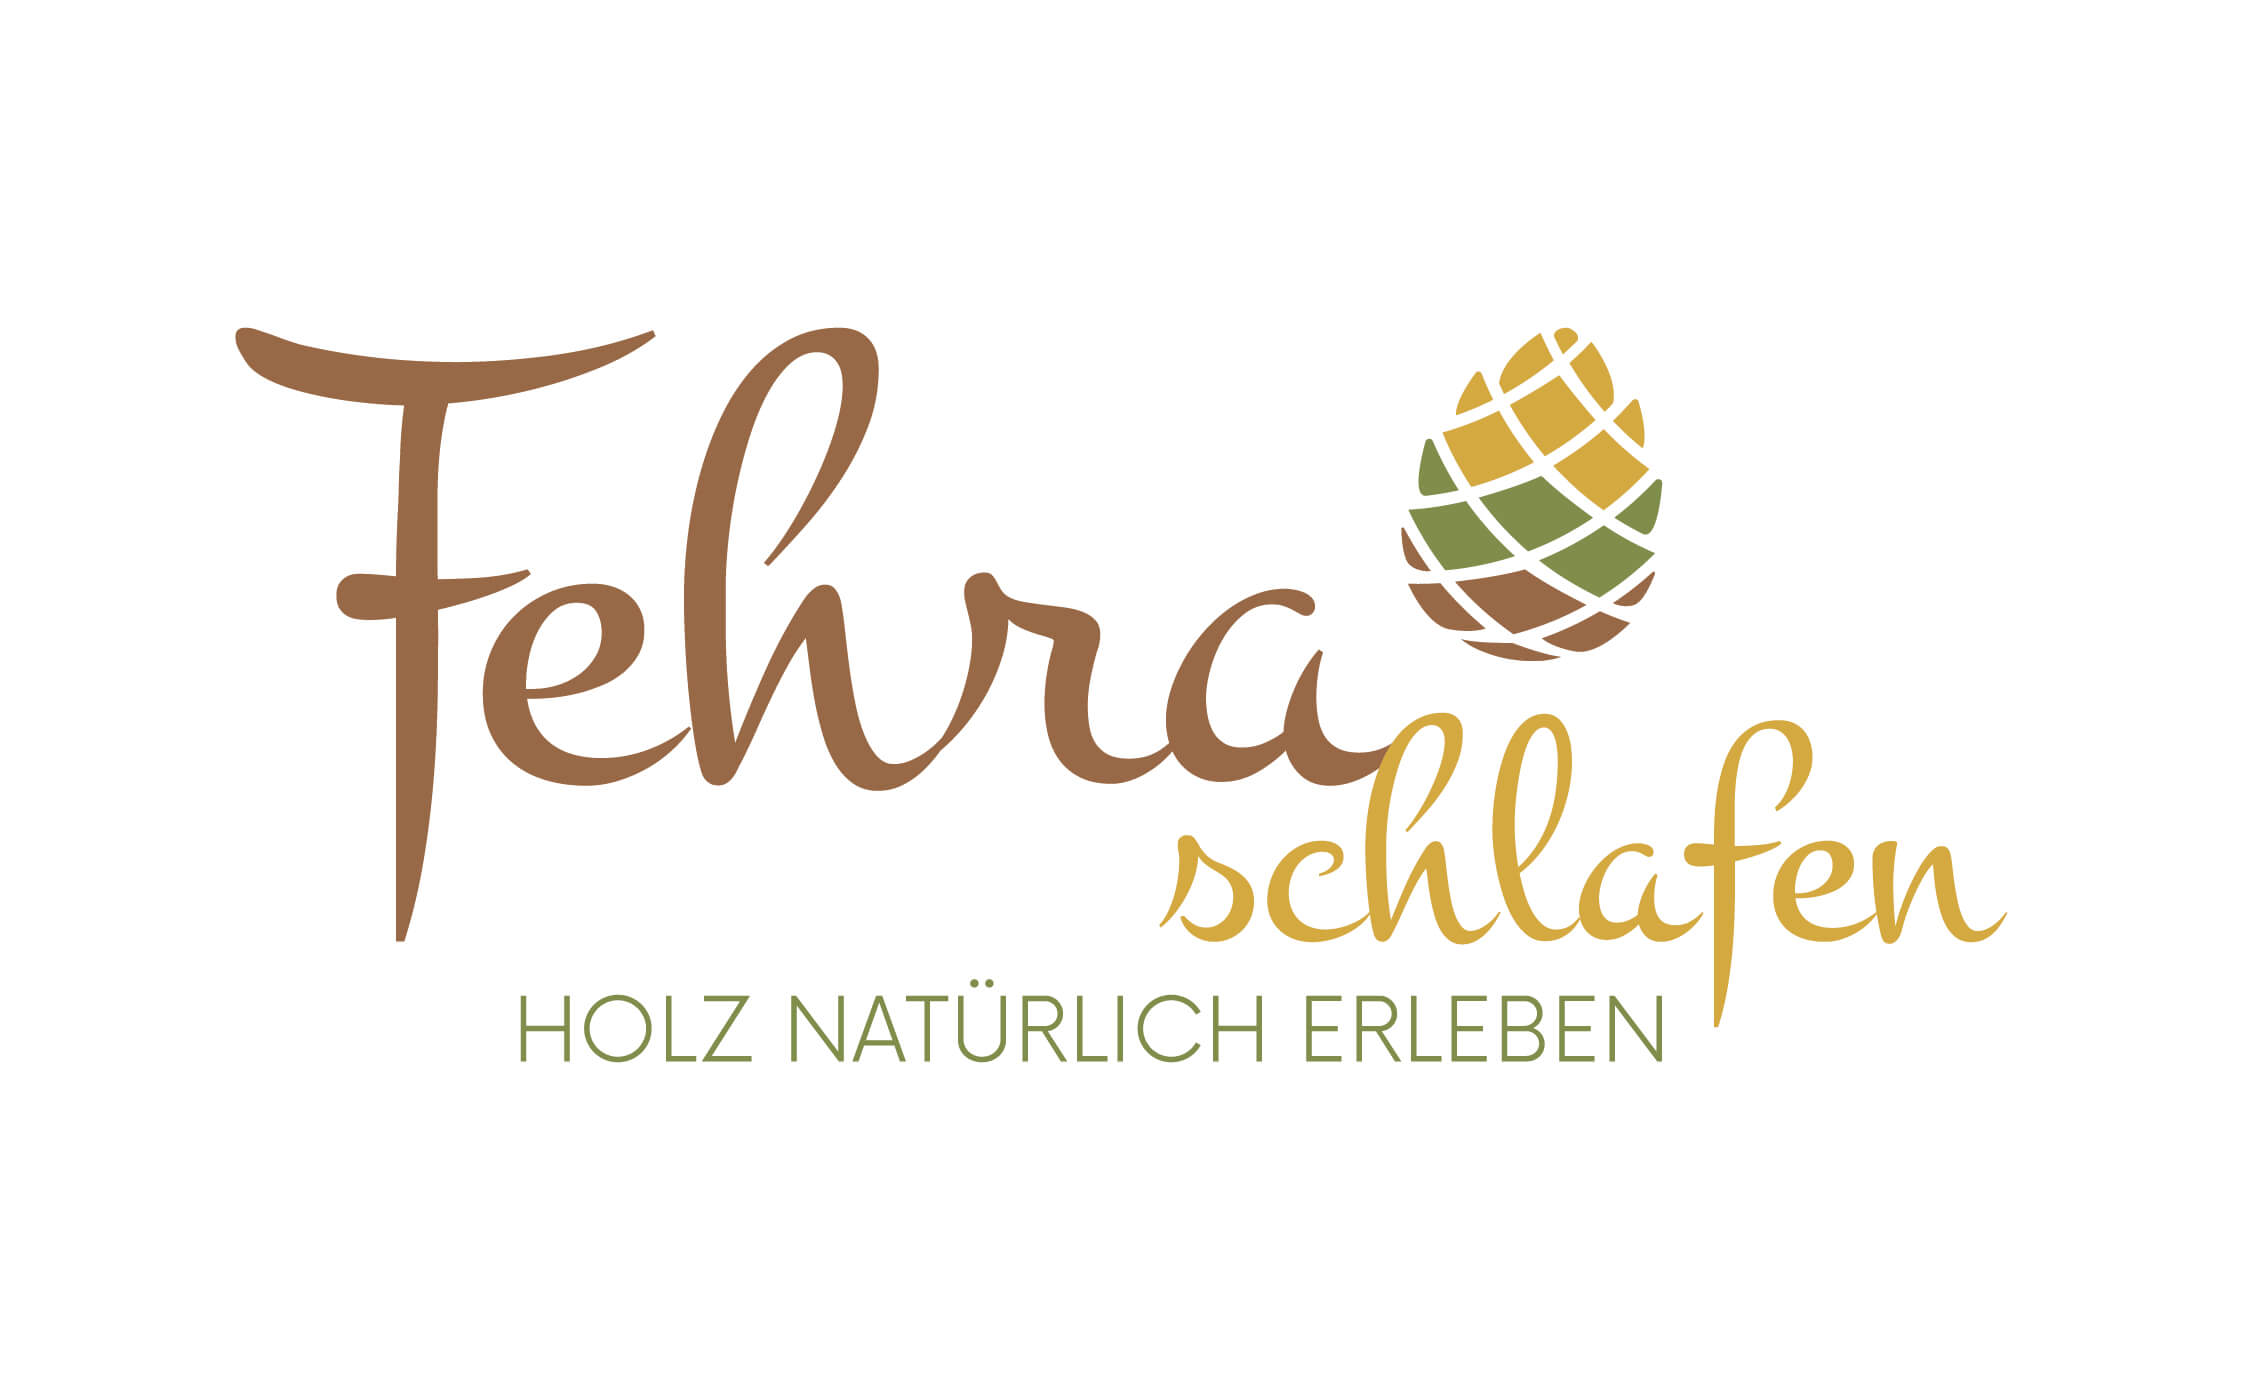 Tischlerei Neulinger - Logo Fehra schlafen - Holz natürlich erleben